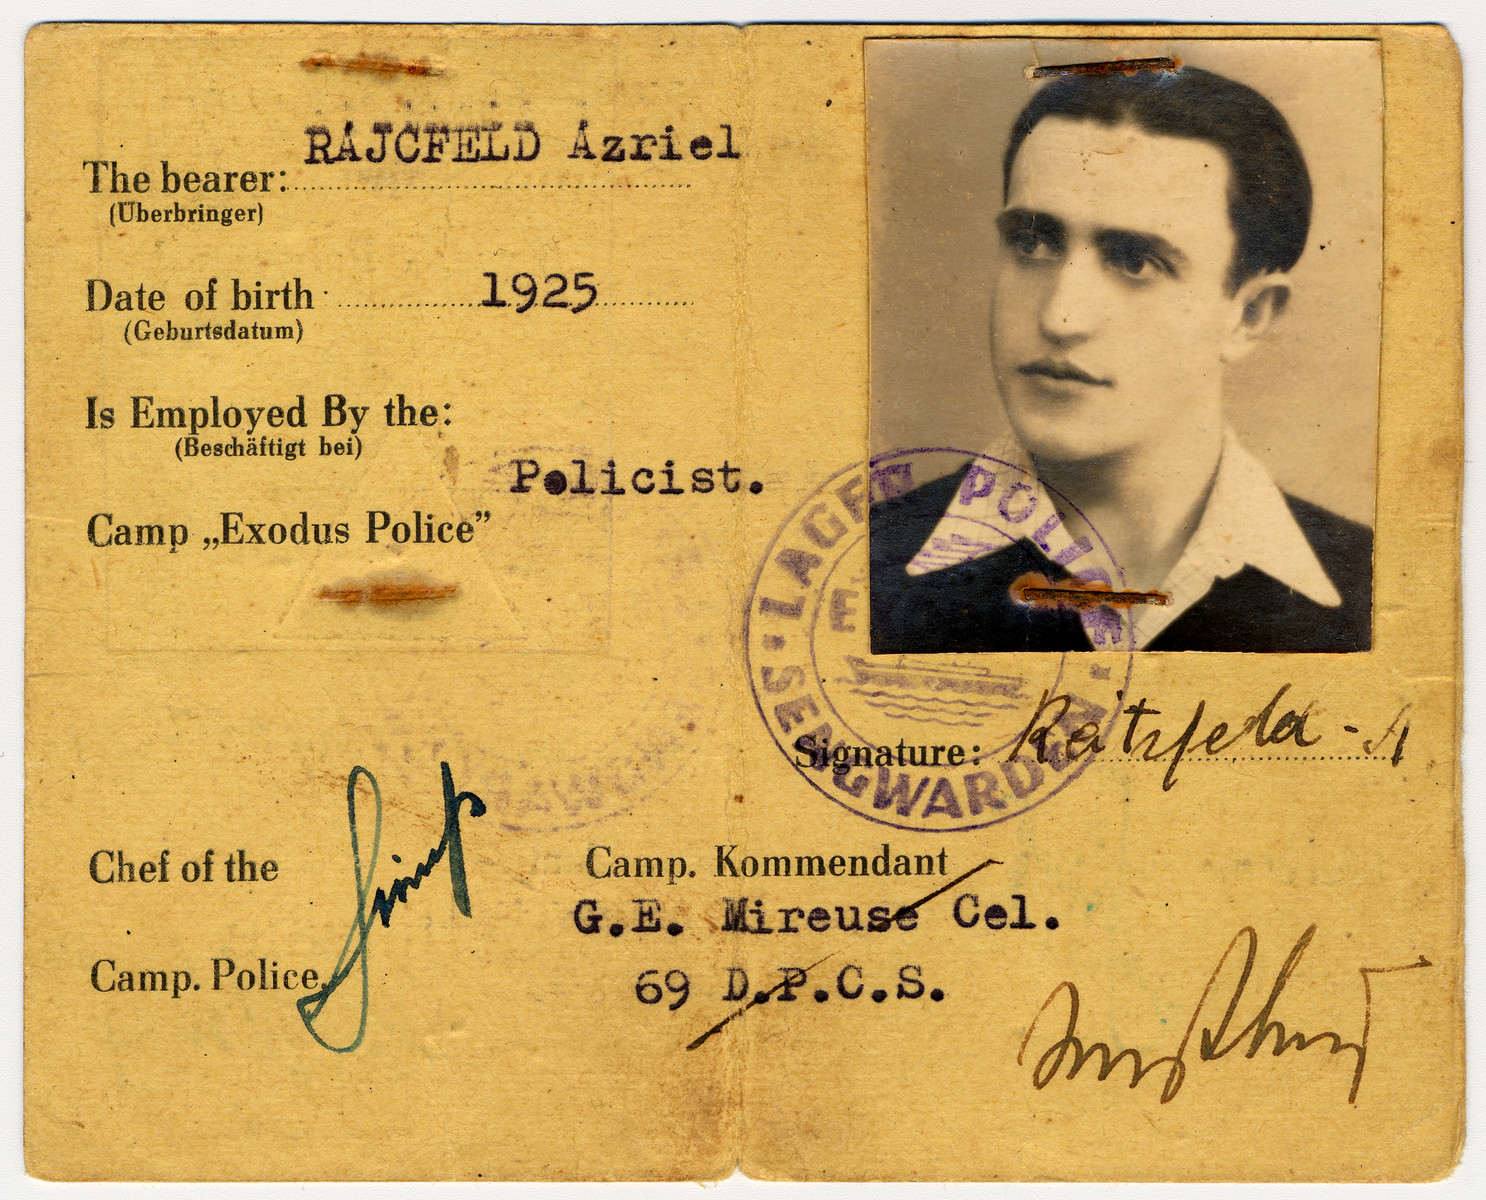 Identification card issued to Jewish policeman Azriel Rajcfled in Camp Sengwarden-Wilhelmshaven.